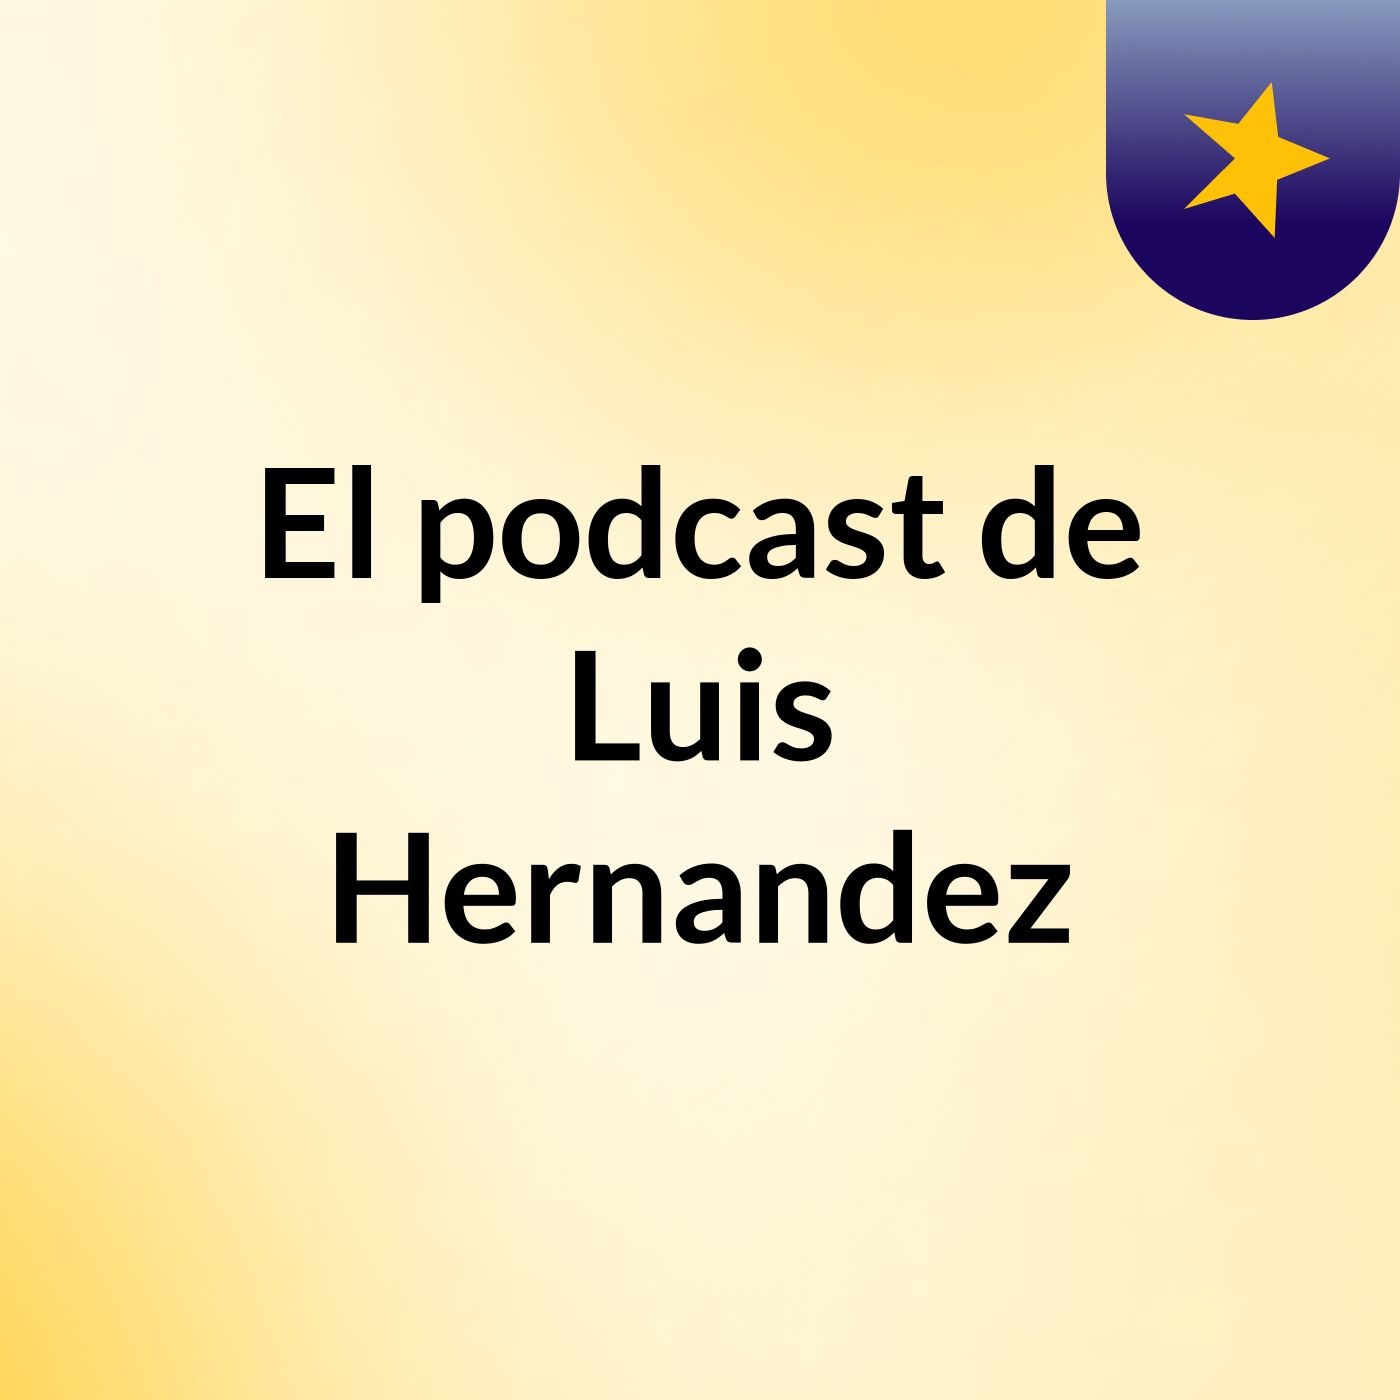 El podcast de Luis Hernandez